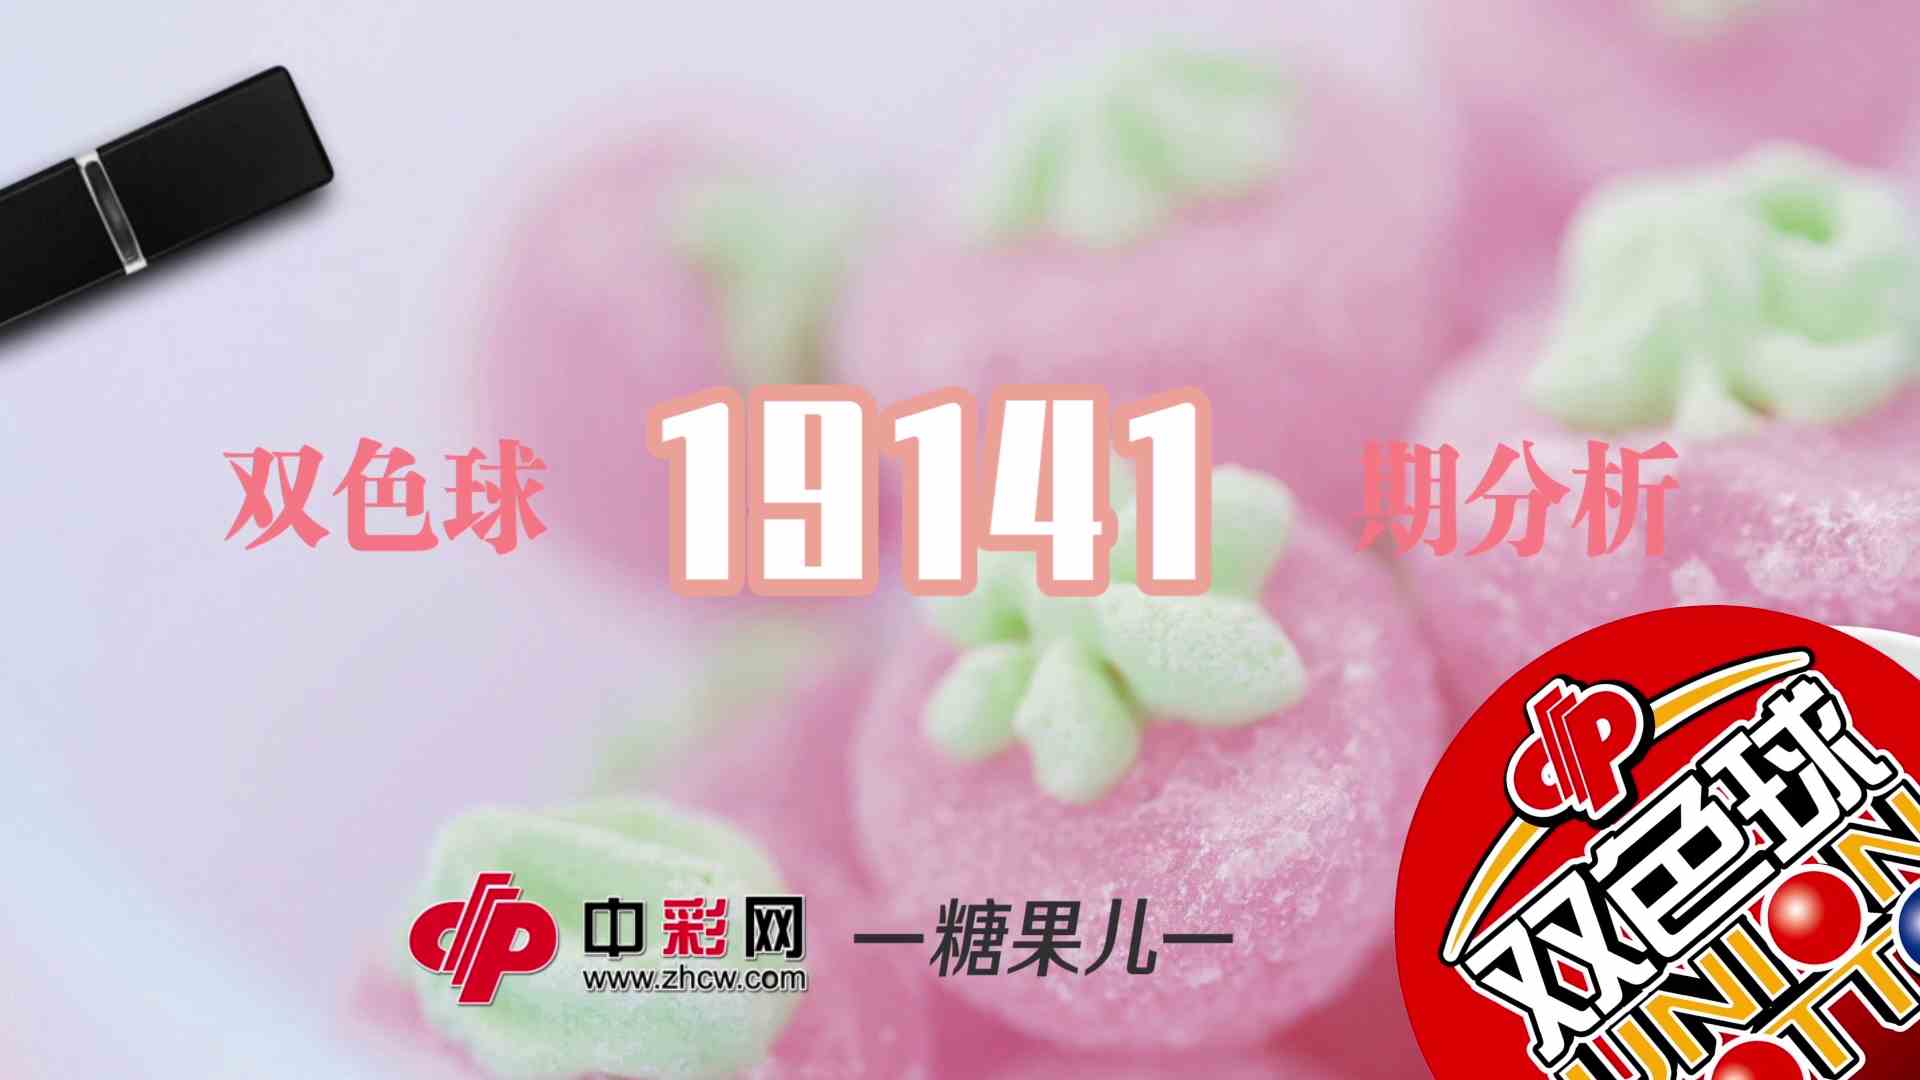 【中彩视频】糖果儿双色球第19141期